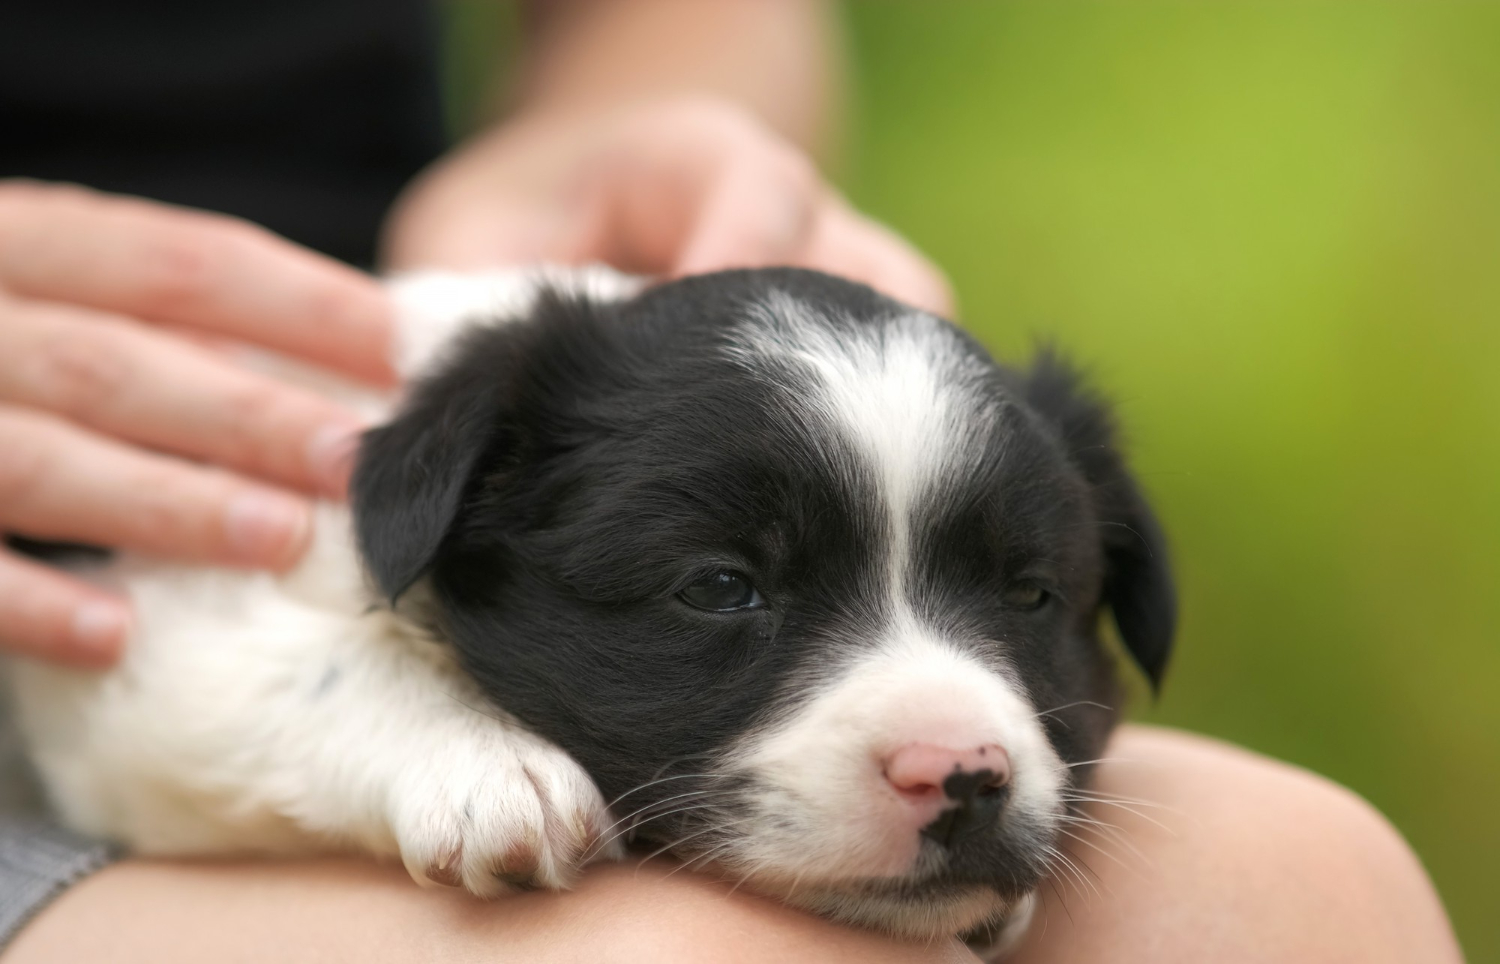 Massoterapia canina: Aprenda a como massagear o seu cãozinho e conheça os benefícios da prática!